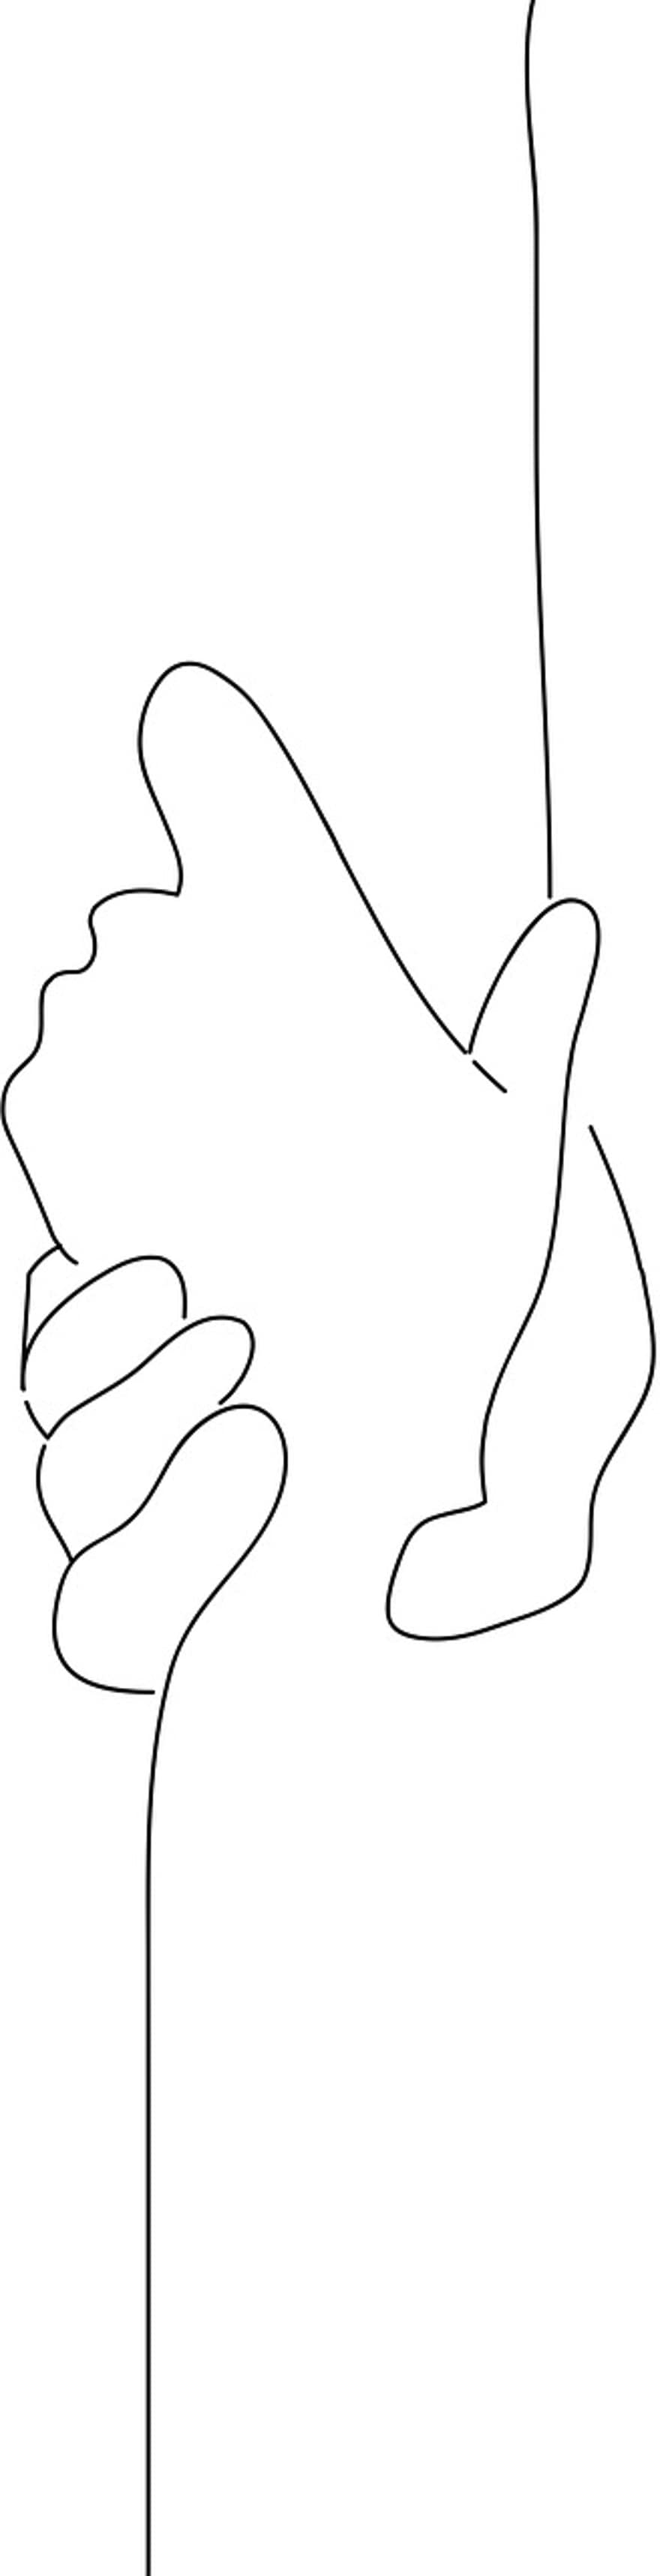 държейки се за ръце, заедно, поддържа, ред, илюстрация, вектор, карикатура, силует, символ, ръка, дизайн